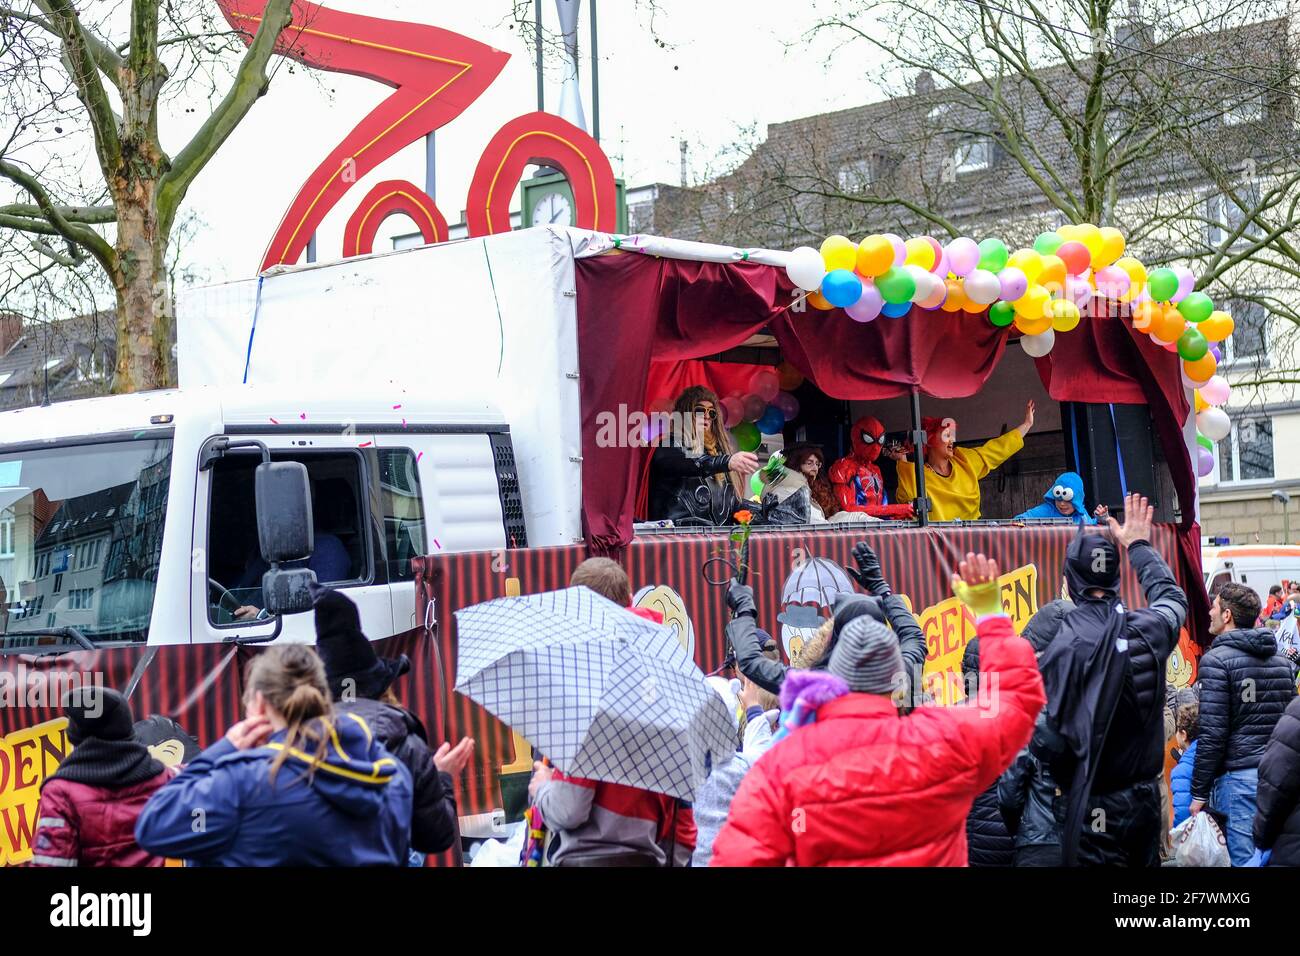 24.02.2020, Essen, Nordrhein-Westfalen, Deutschland - Strassenkarneval am Rosenmontag in Essen-Ruettenscheid am Ruettenscheider Markt Stock Photo